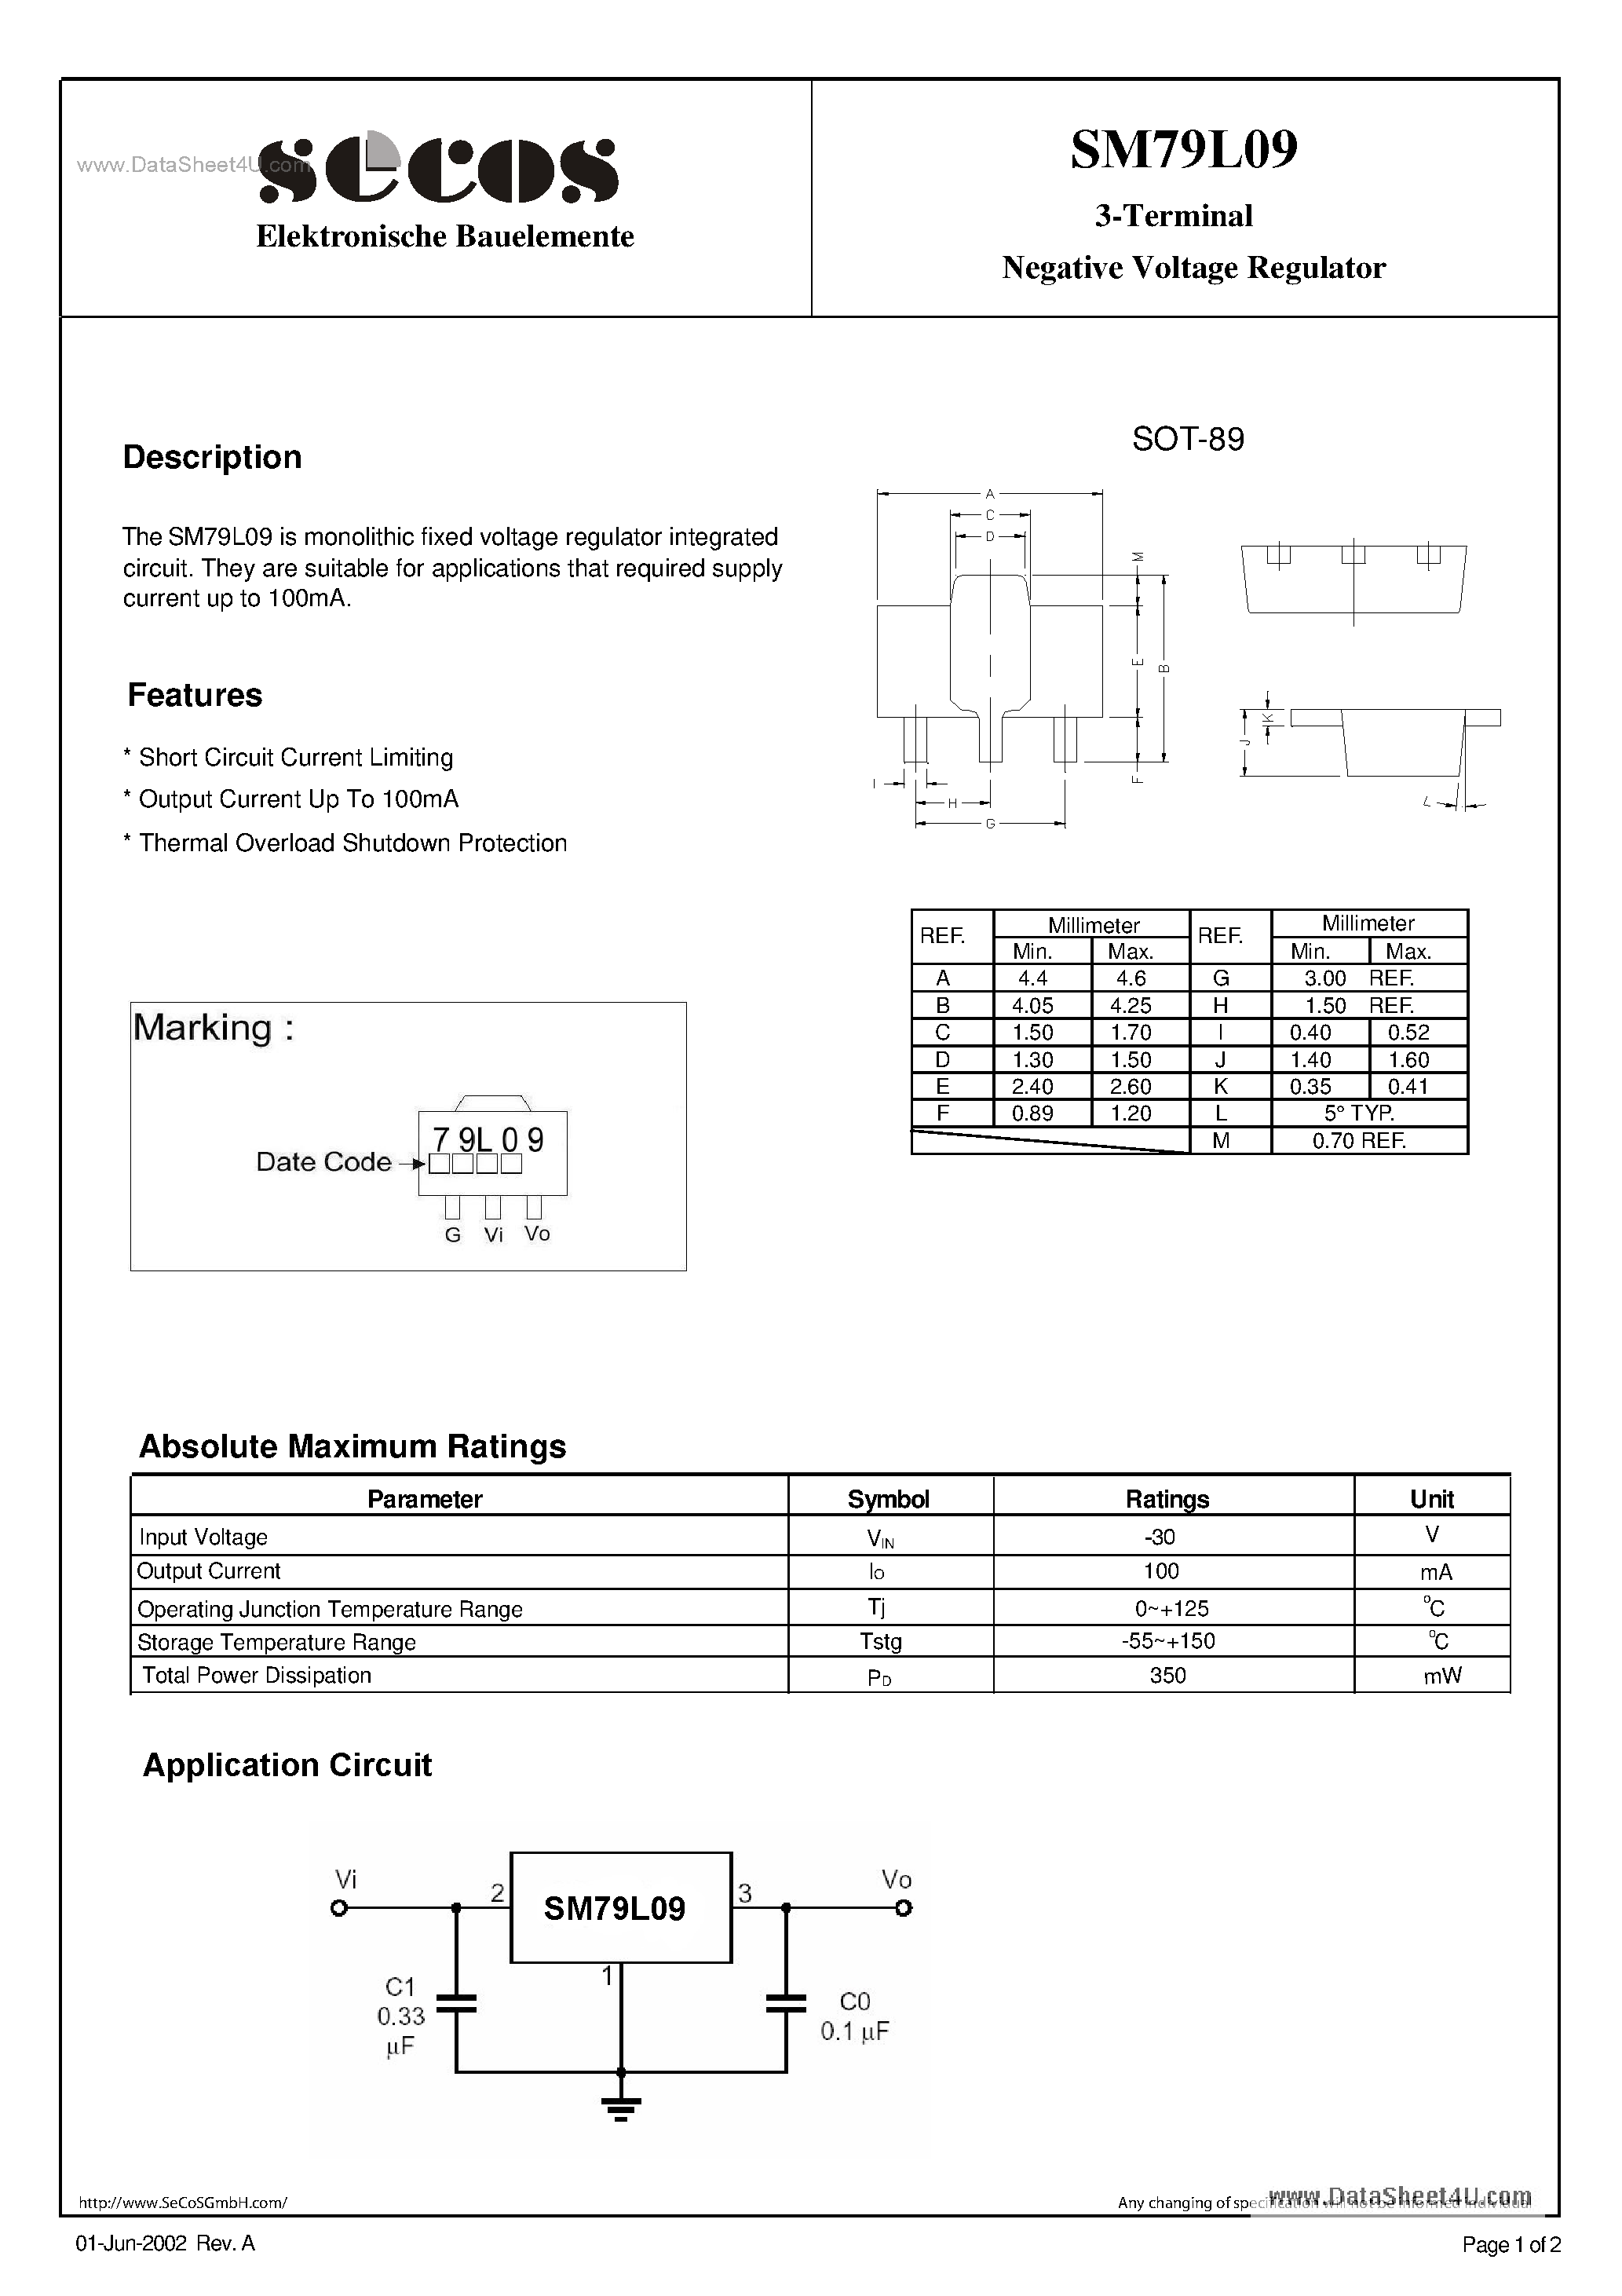 Даташит SM79L09 - Negative Voltage Regulator страница 1